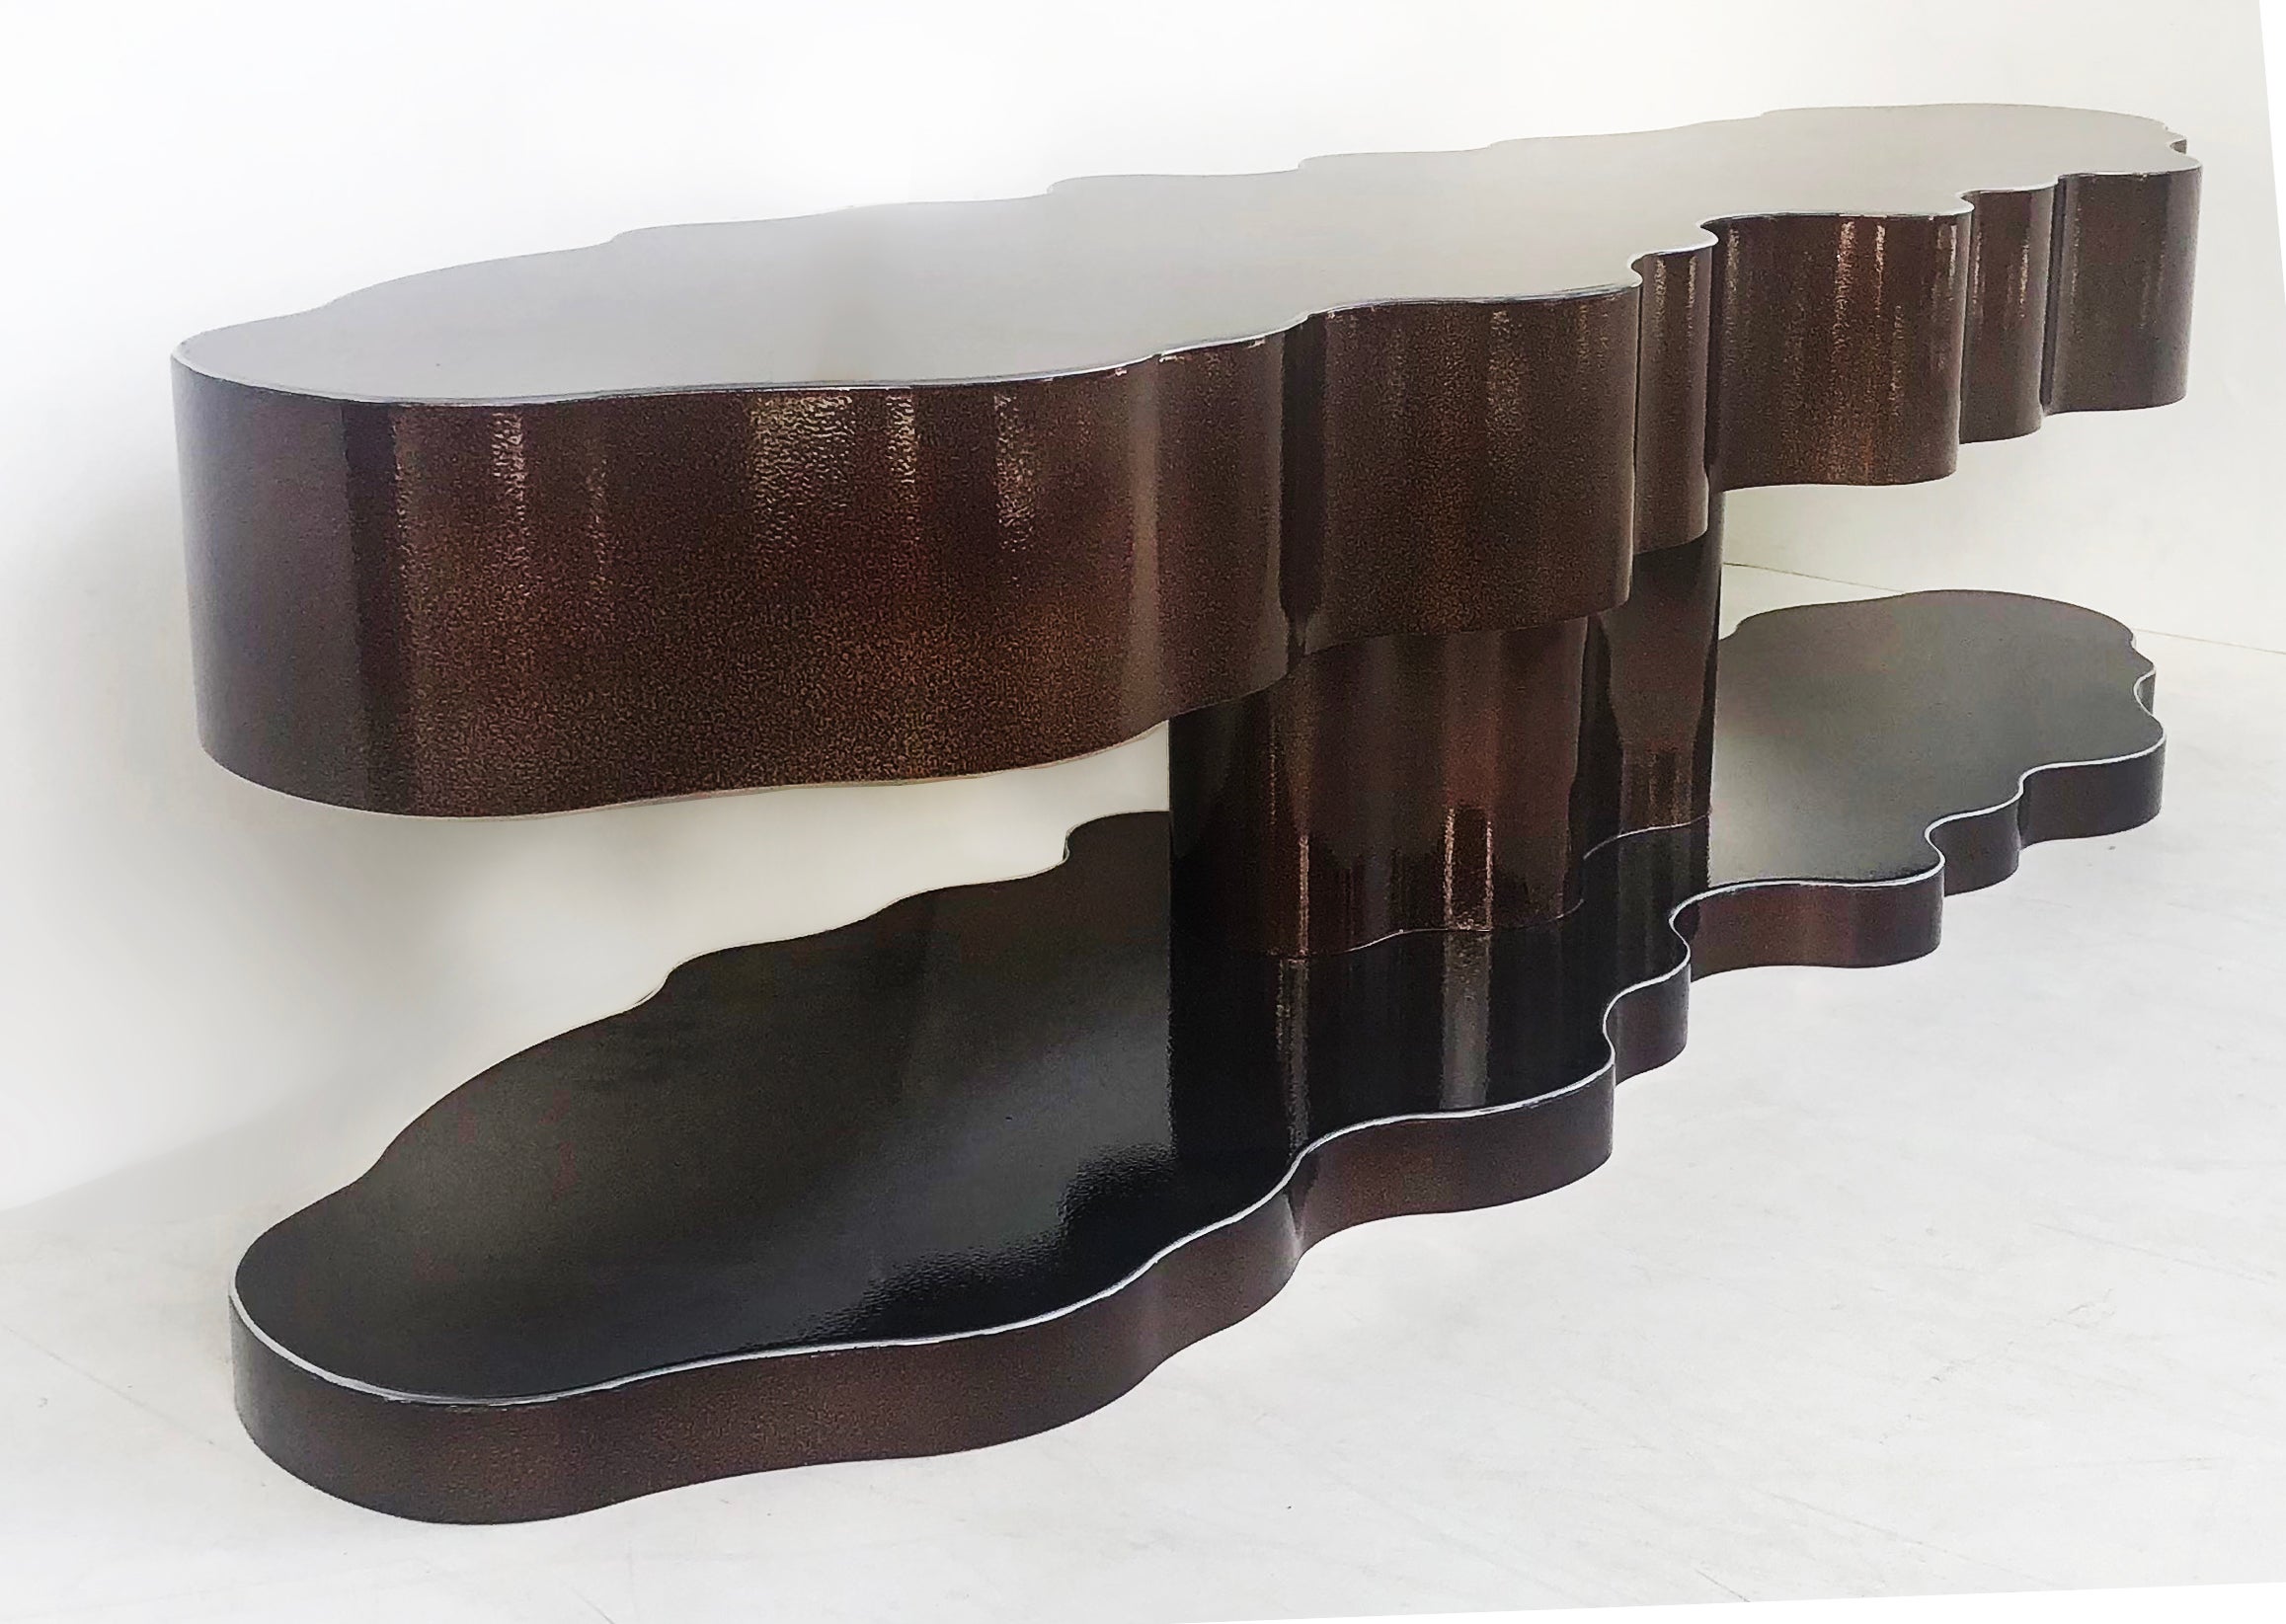 Bert Furnari Table basse sculpturale abstraite, finition aluminium poudré

La table basse sculpturale en aluminium de Bert Funari, unique en son genre, est proposée à la vente avec une finition en poudre. Fabriqué en aluminium coupé et courbé à la